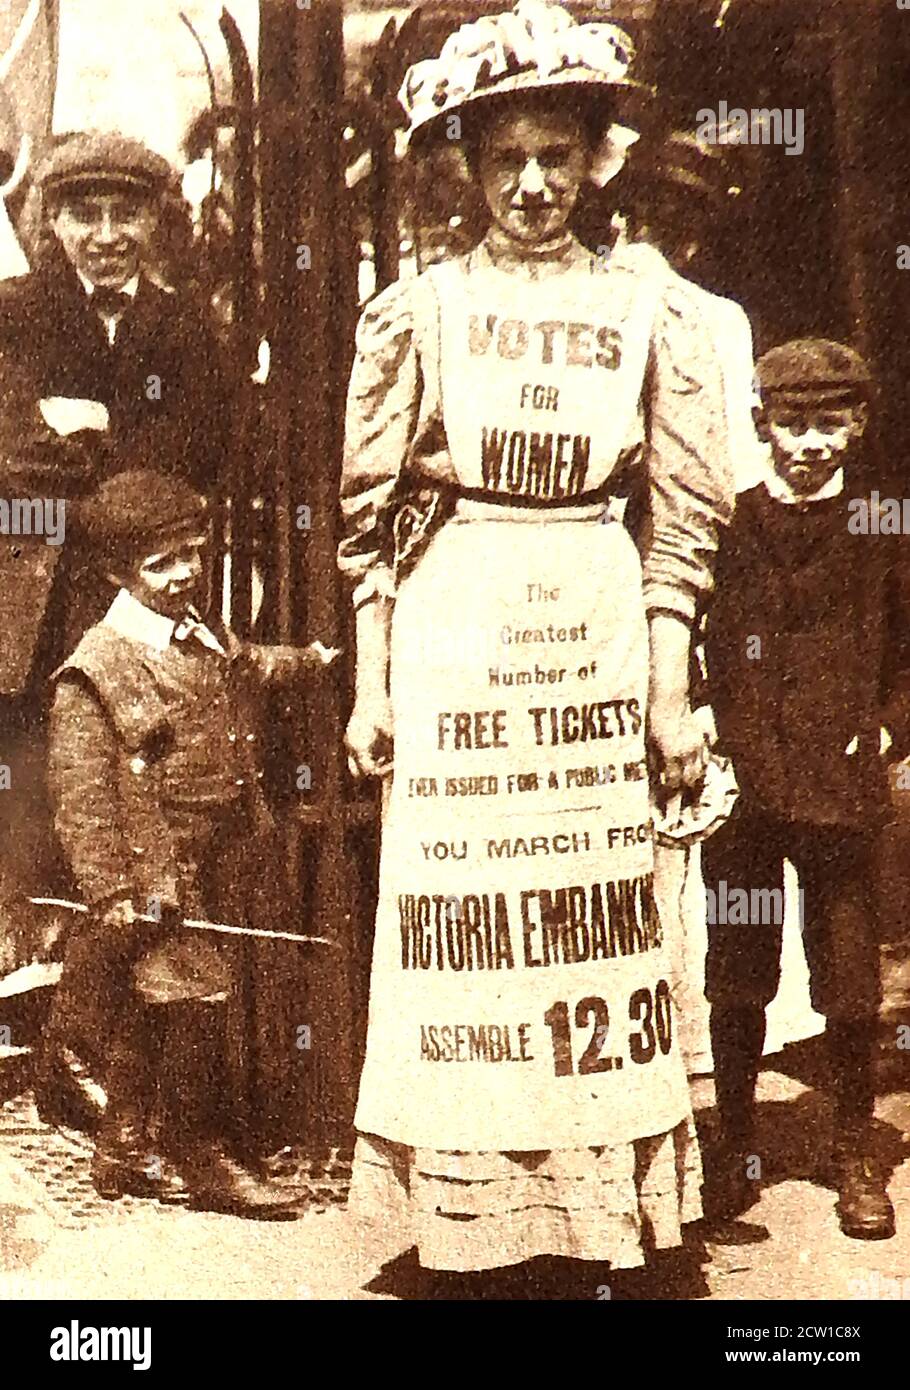 1908 SUFFRAGETTES - 1908 UNA cameriera vestisce come a Affissioni umane che pubblicizzano un incontro pubblico per suffragettes inglesi esigenti voti per le donne Foto Stock